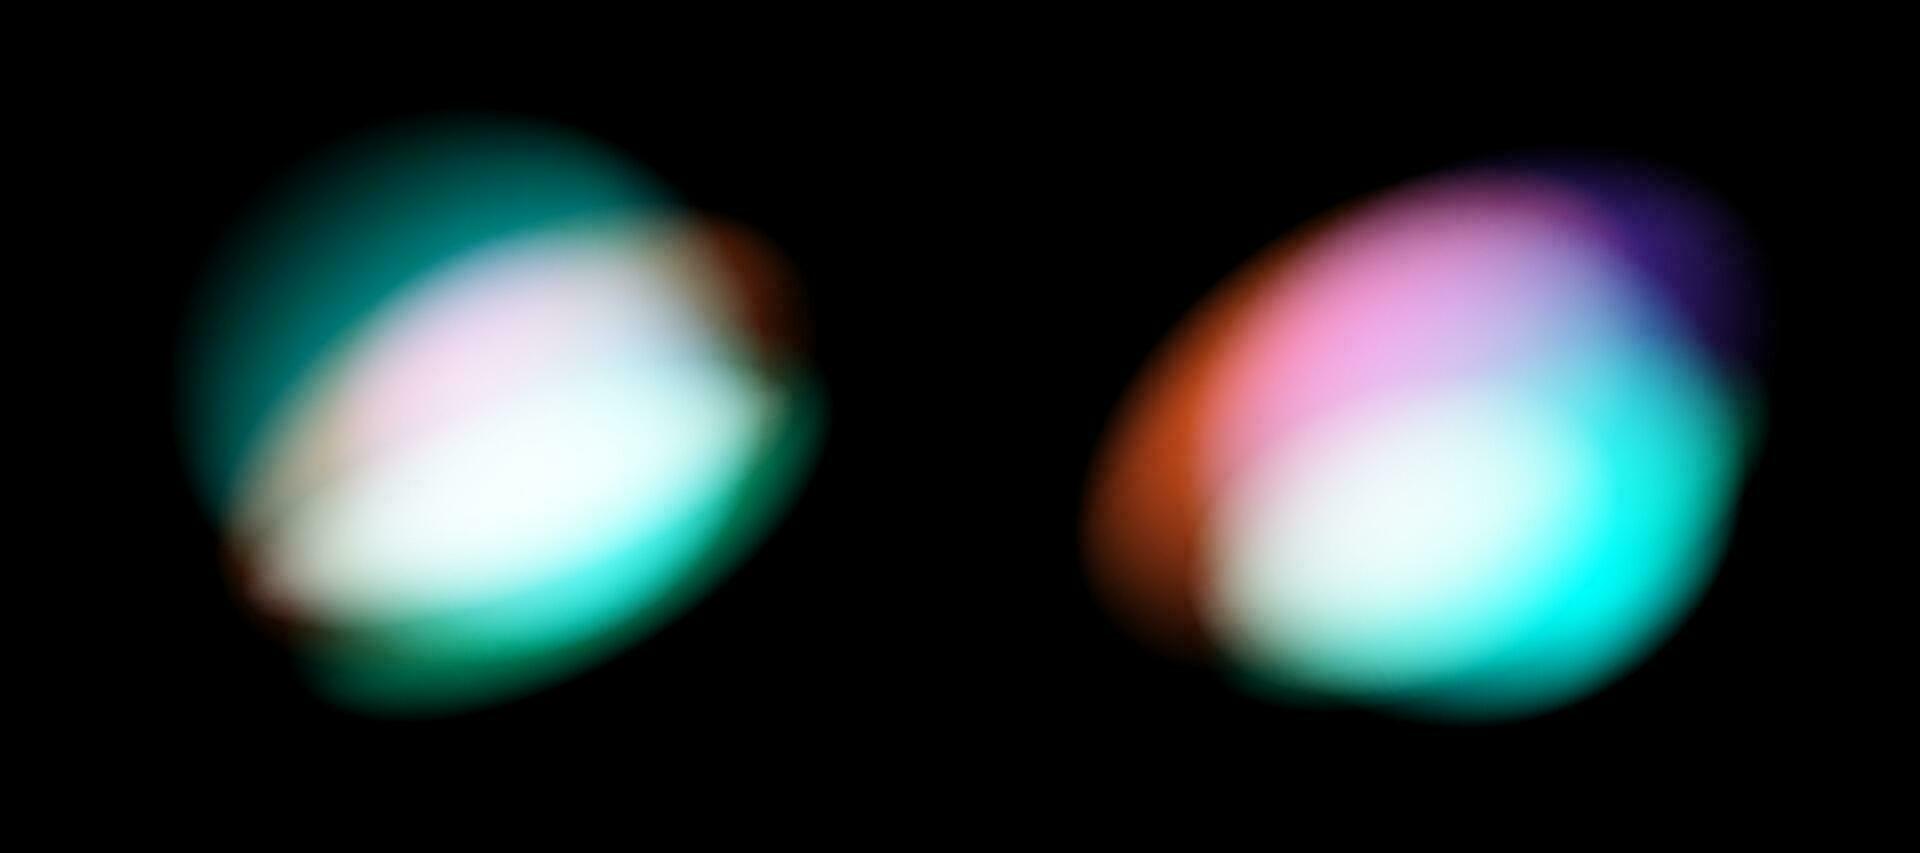 sfocato arcobaleno rifrazione copertura effetto impostare. leggero lente prisma effetto su nero sfondo. olografico riflessione, cristallo bagliore perdita ombra sovrapposizione. vettore astratto illustrazione.